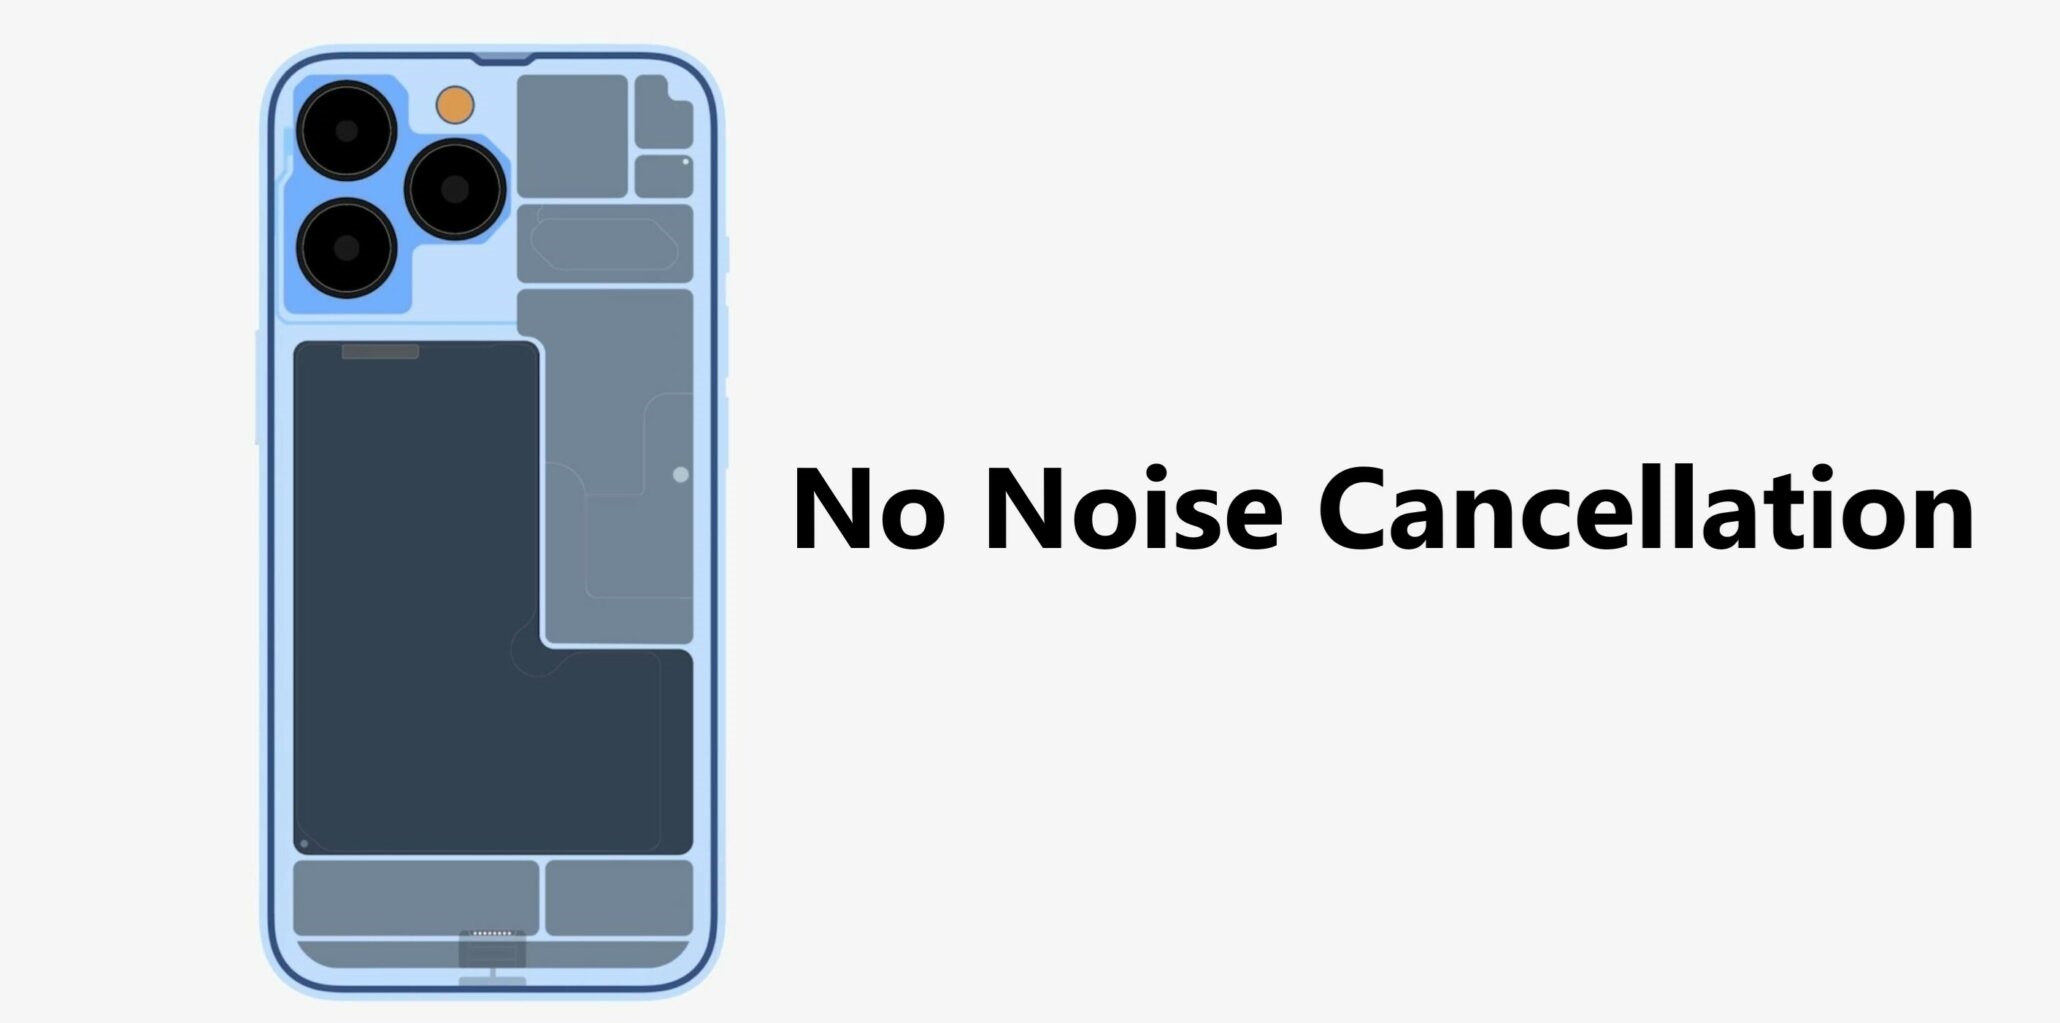 苹果证实iPhone 13移除德律风降噪功效 此前机型均配有